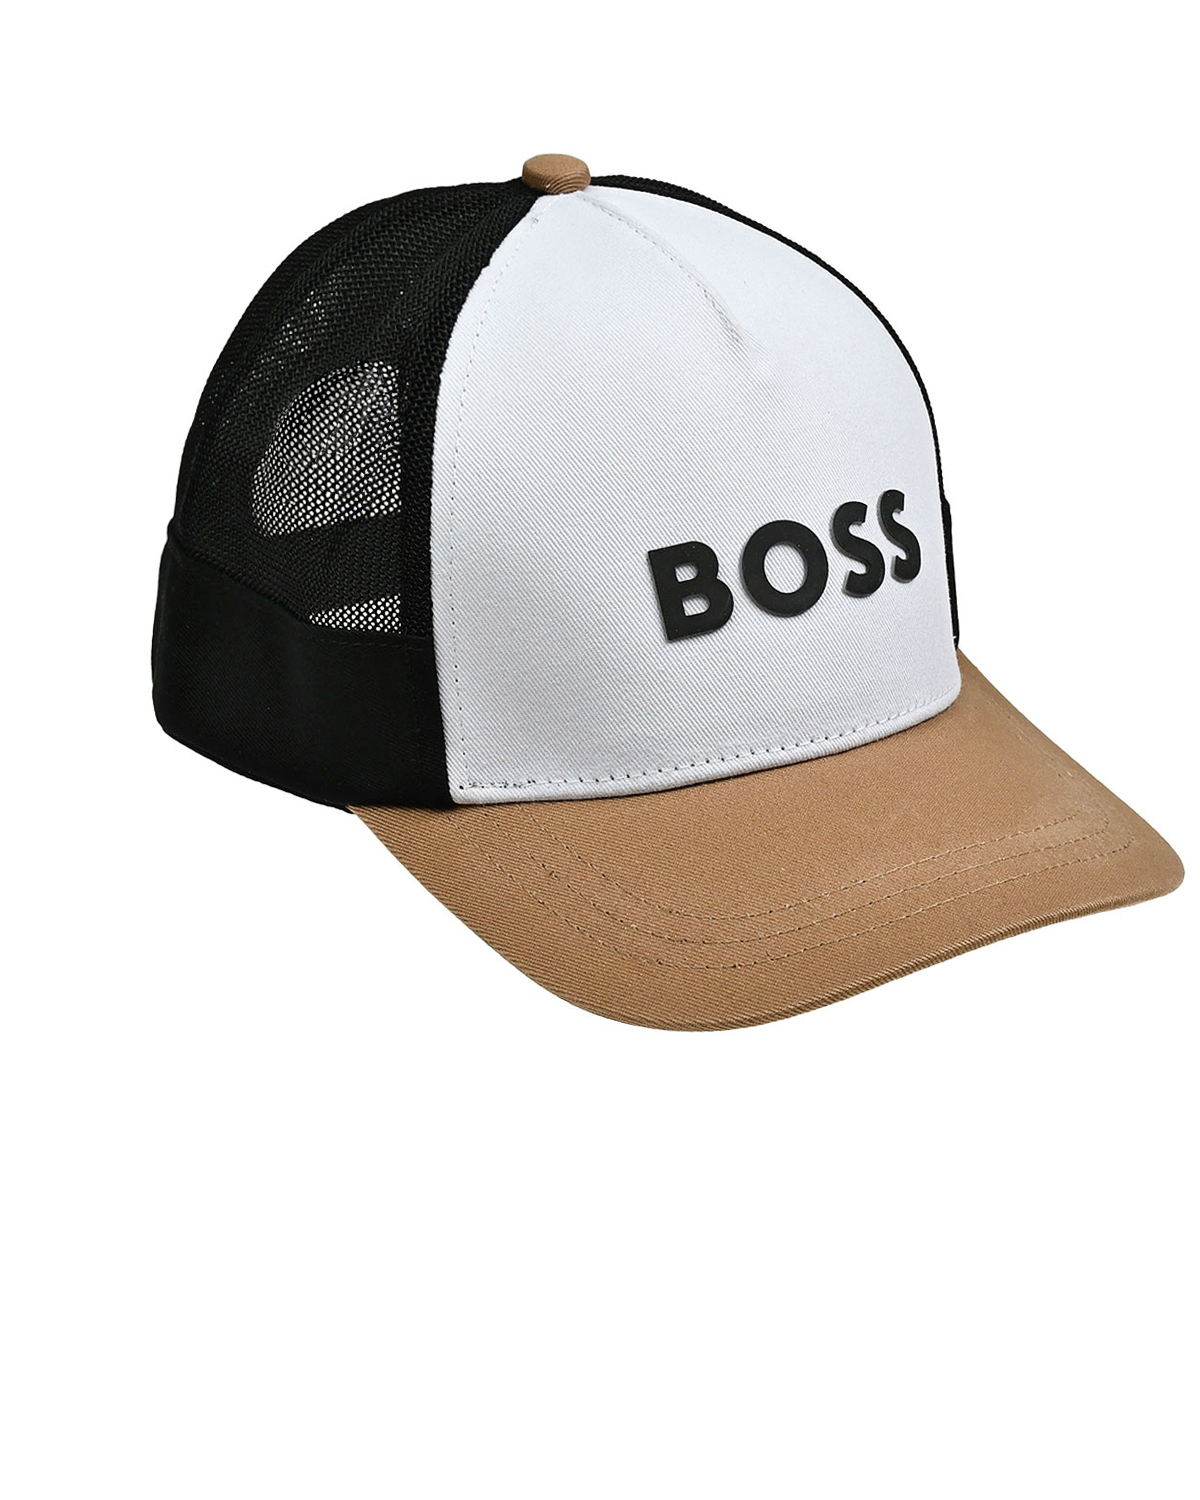 Бейсболка с черным логотипом BOSS, размер 52, цвет нет цвета